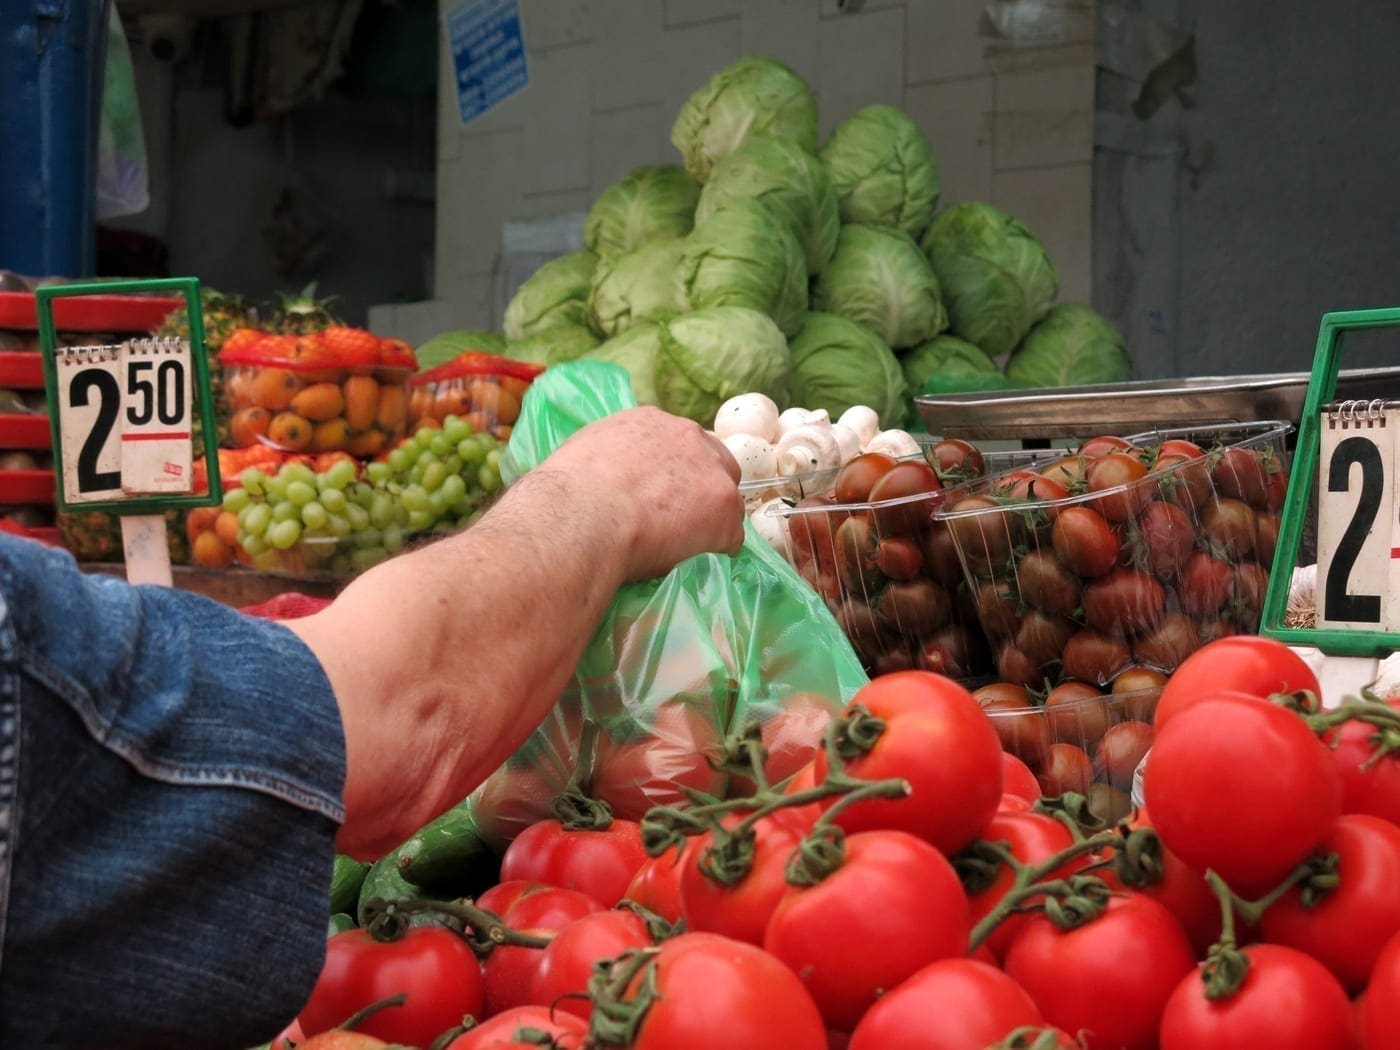 Choosing produce at a market